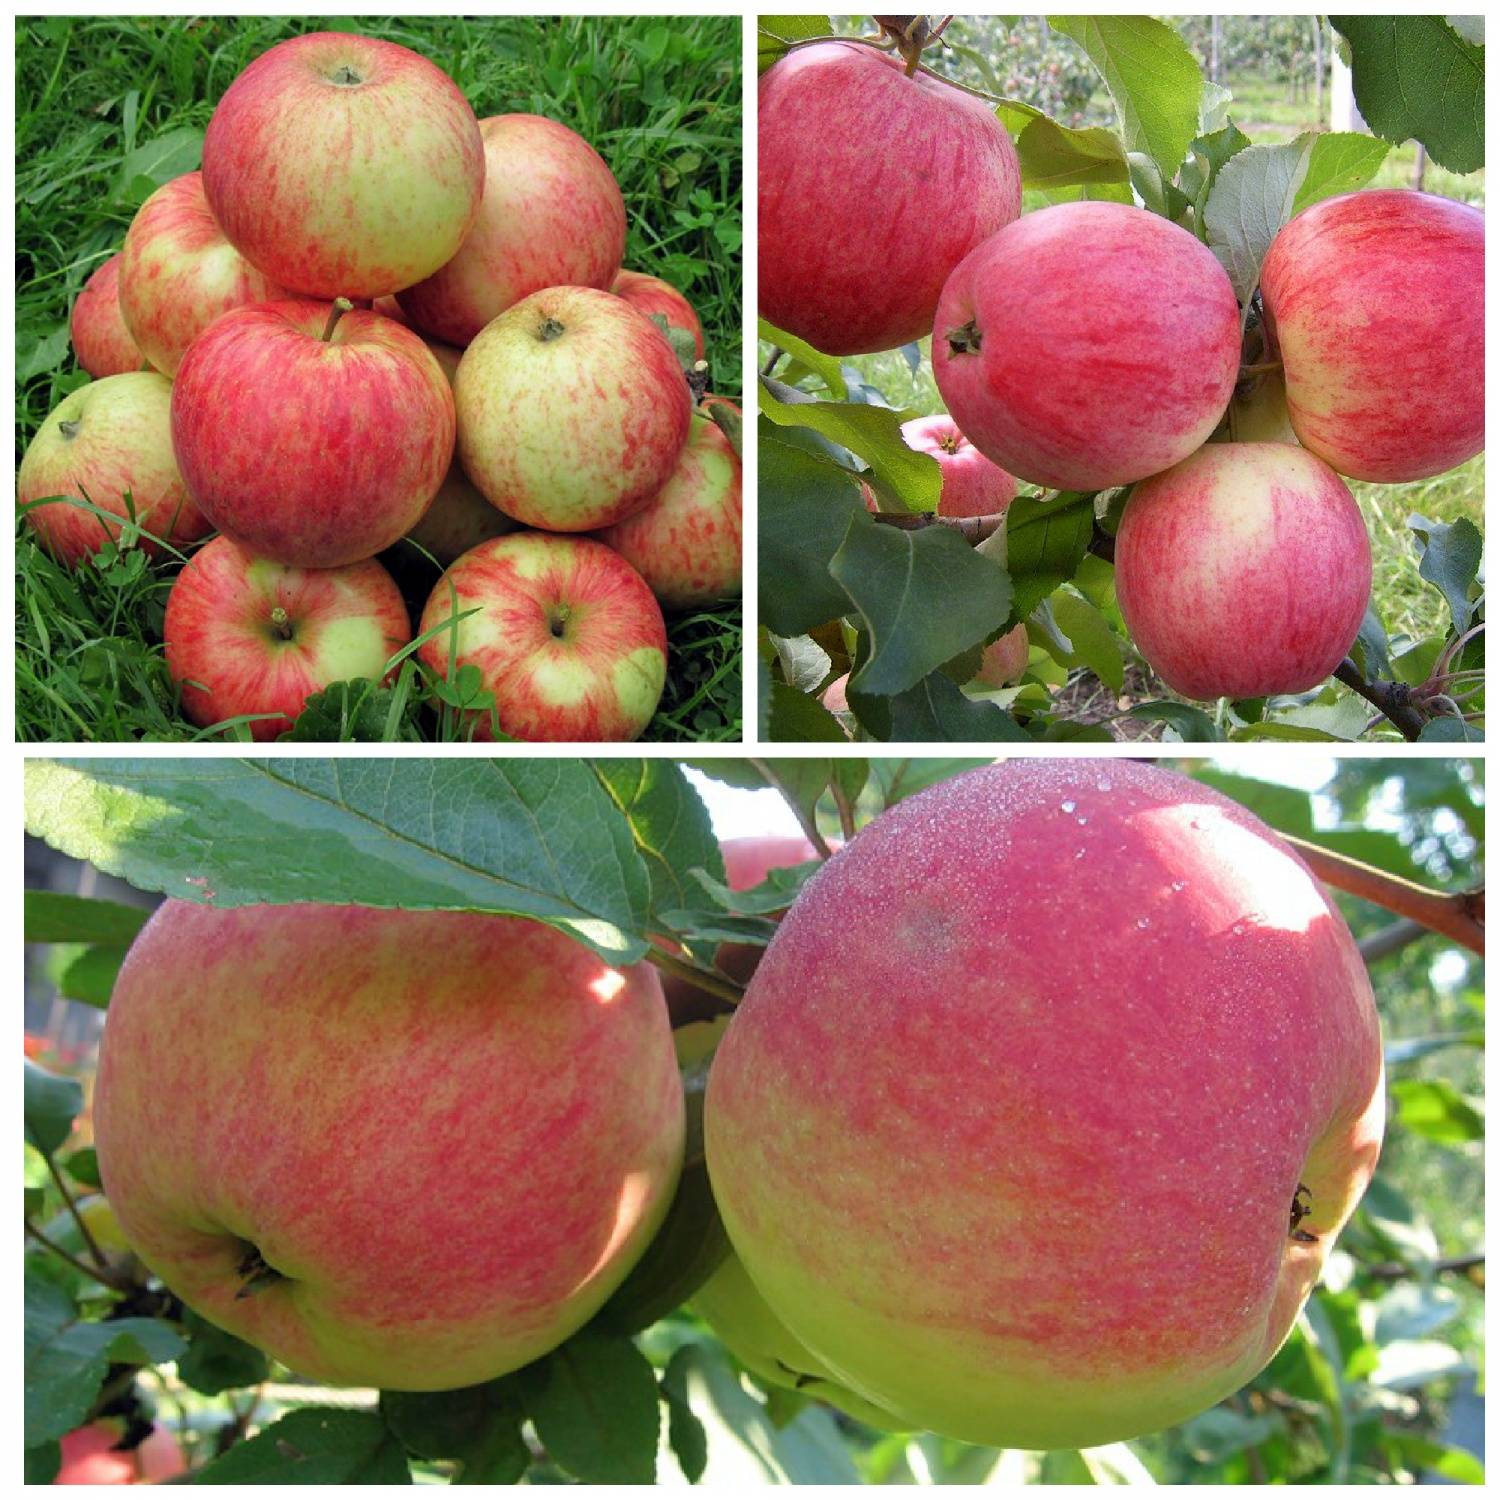 Яблоня сорта орлинка - описание растения и особенности плодов, посадка саженца, последующий уход